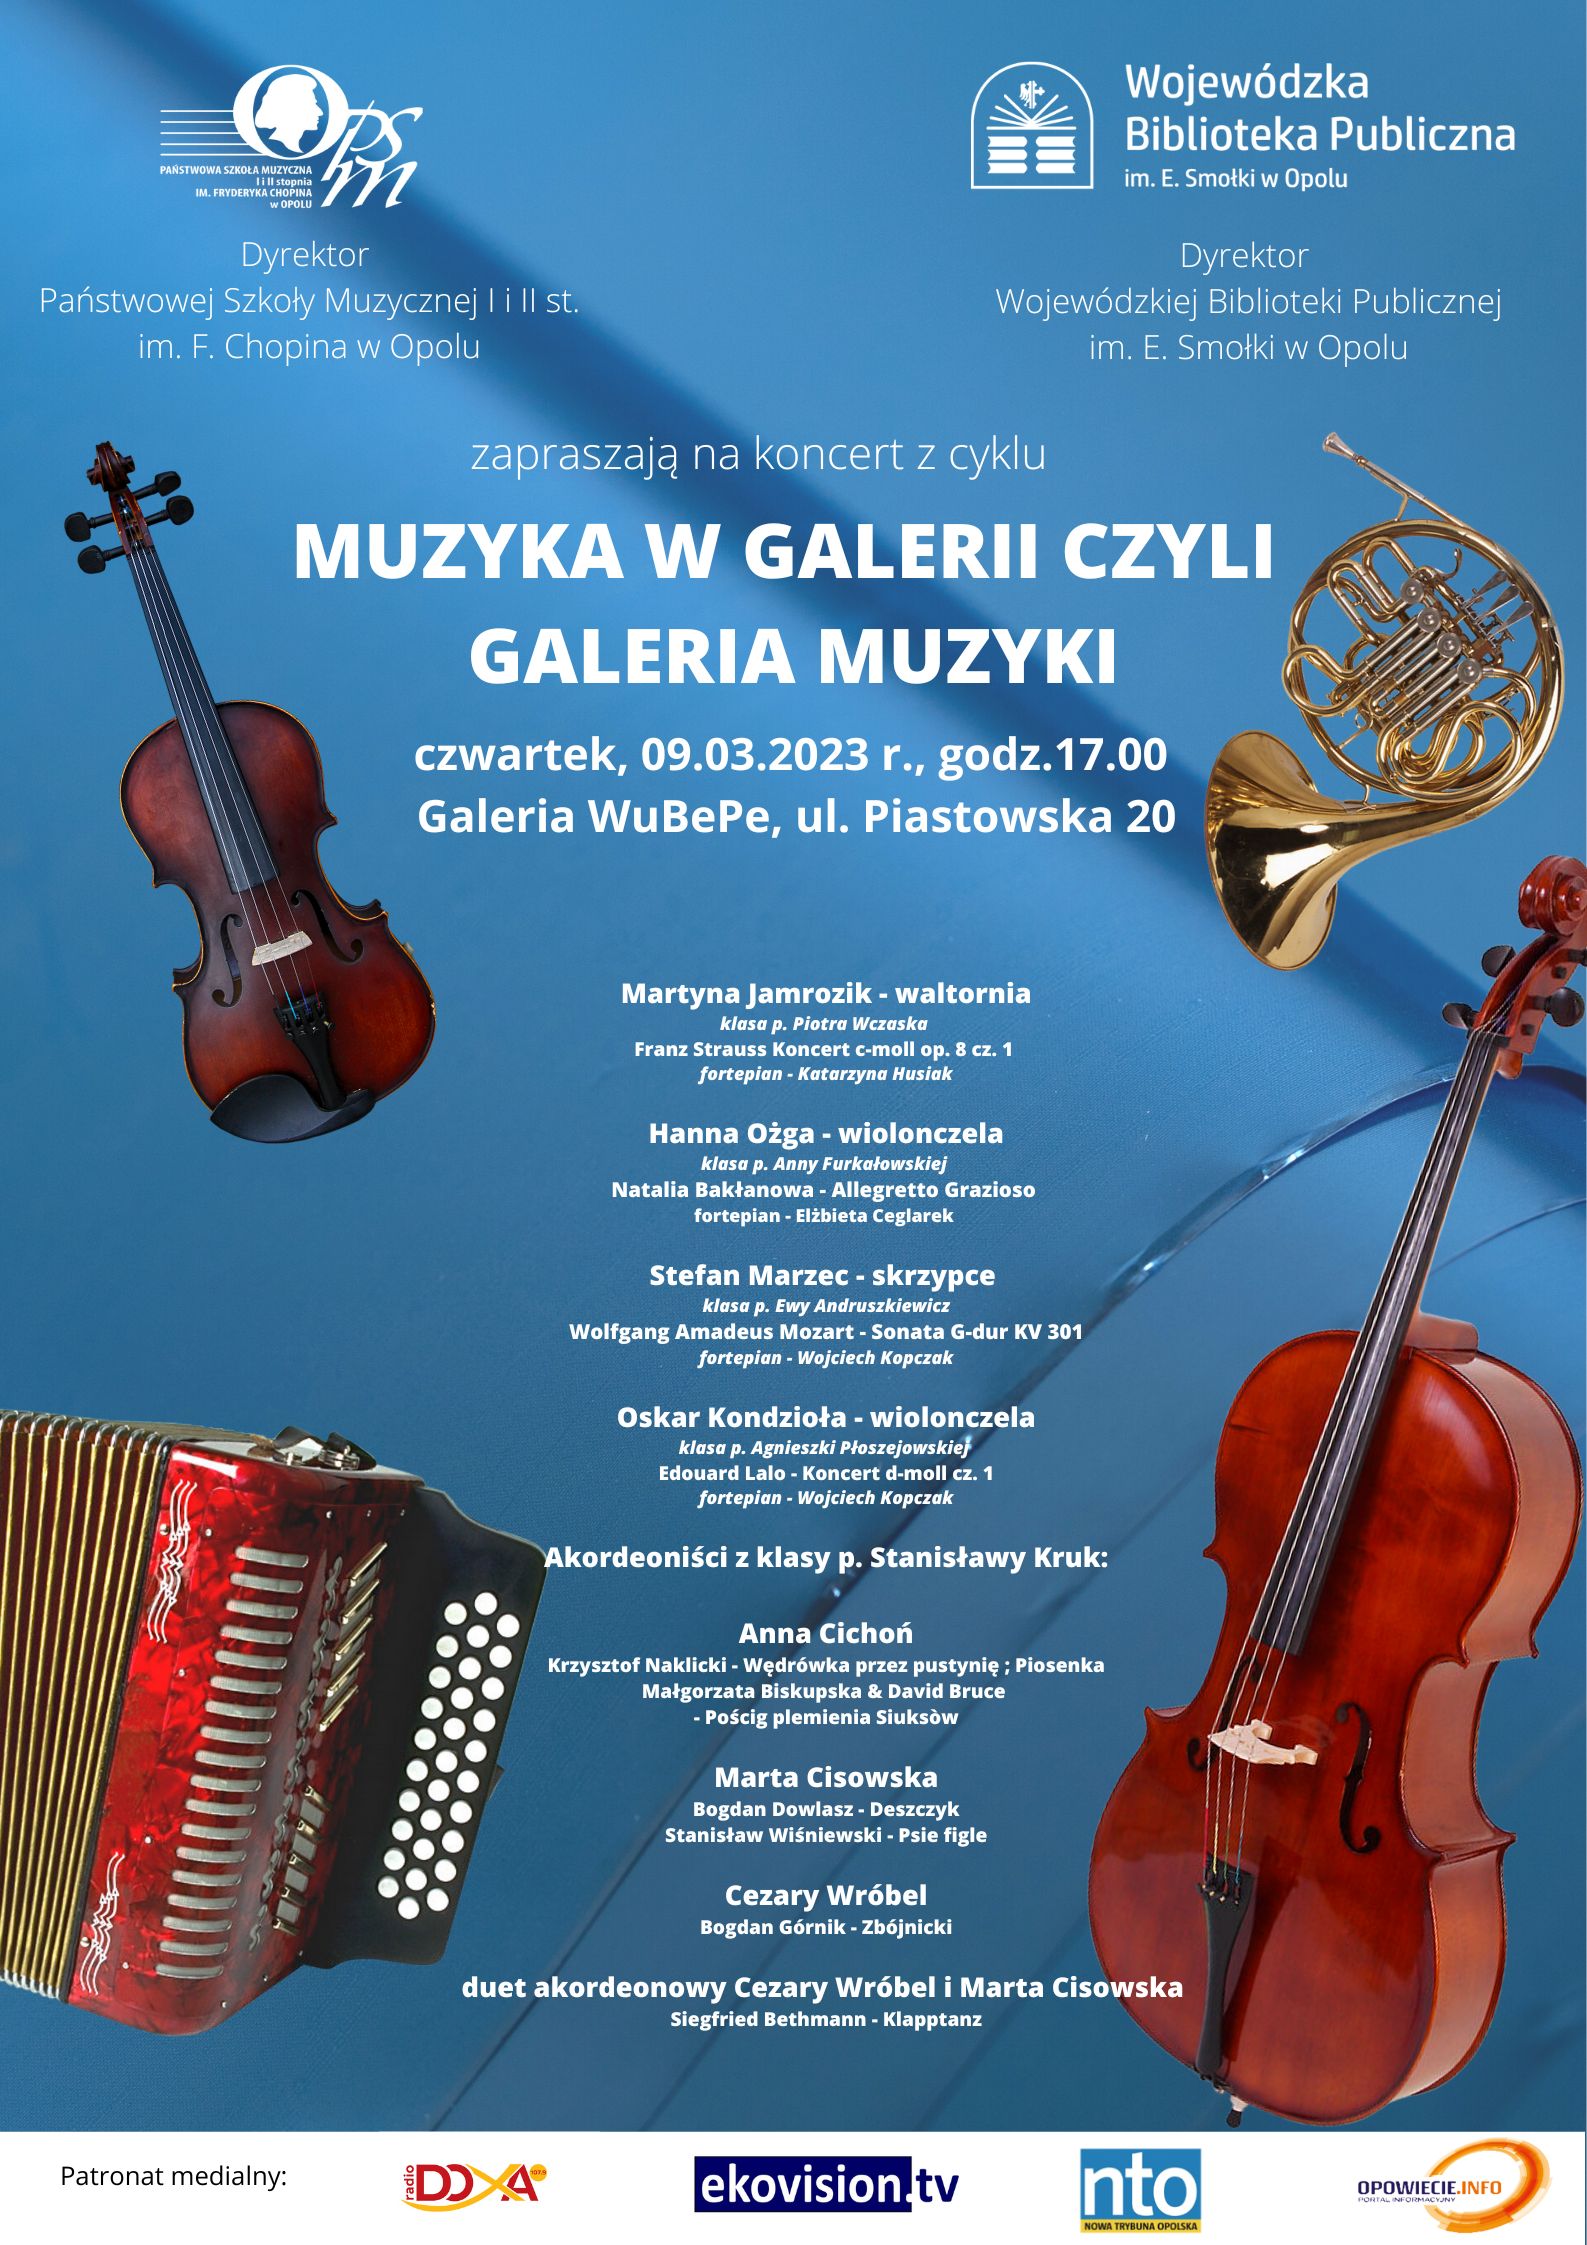 Plakat marcowego koncertu Muzyka w Galerii czyli Galeria Muzyki